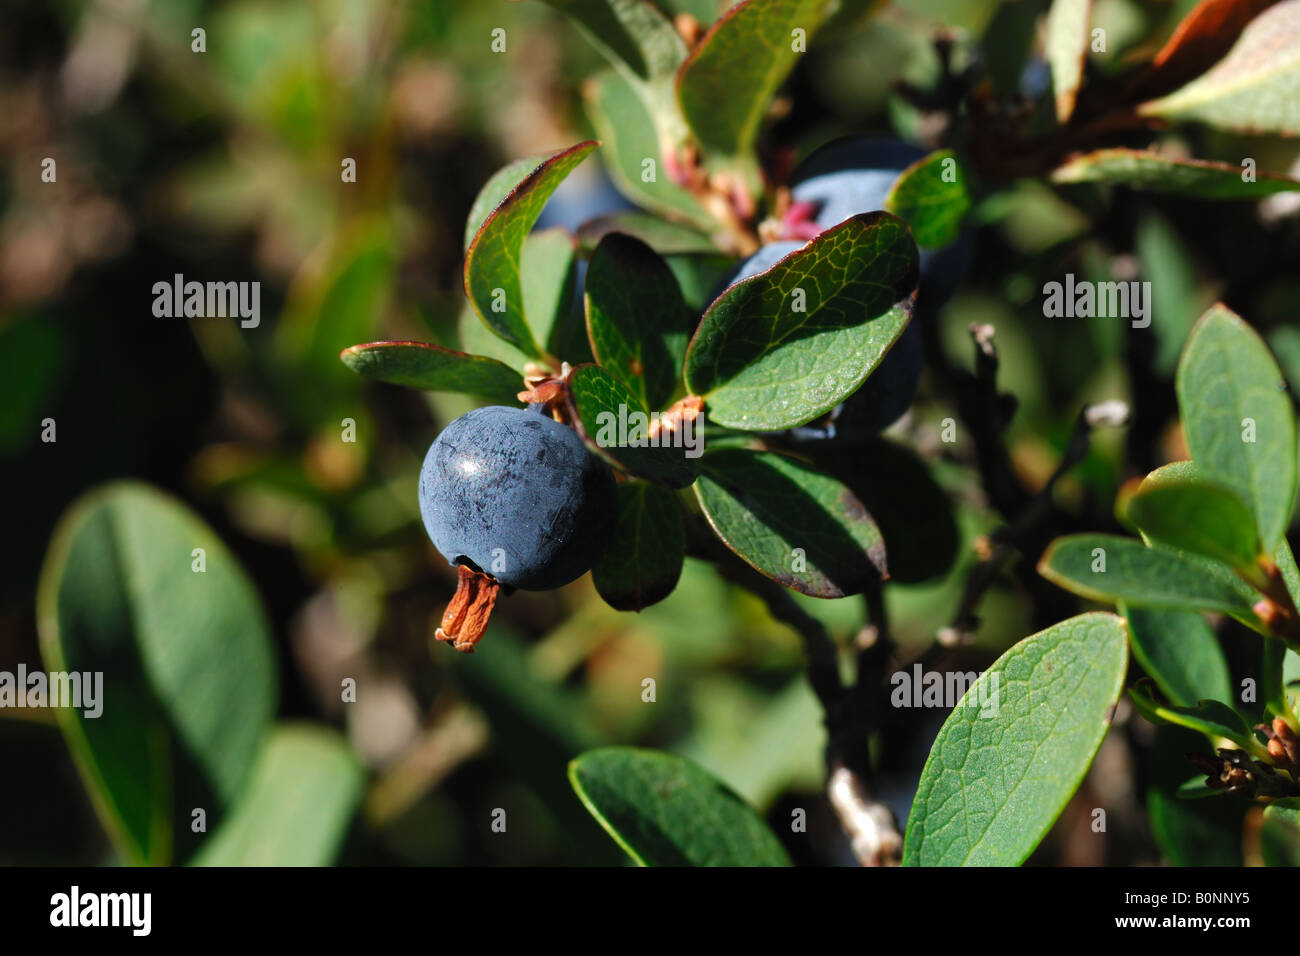 blueberry mirtillo nero Vaccinum mirtillum piante arbusti frutto bacca piante da frutto Cogne Parco Nazionale Gran Paradiso Valn Stock Photo